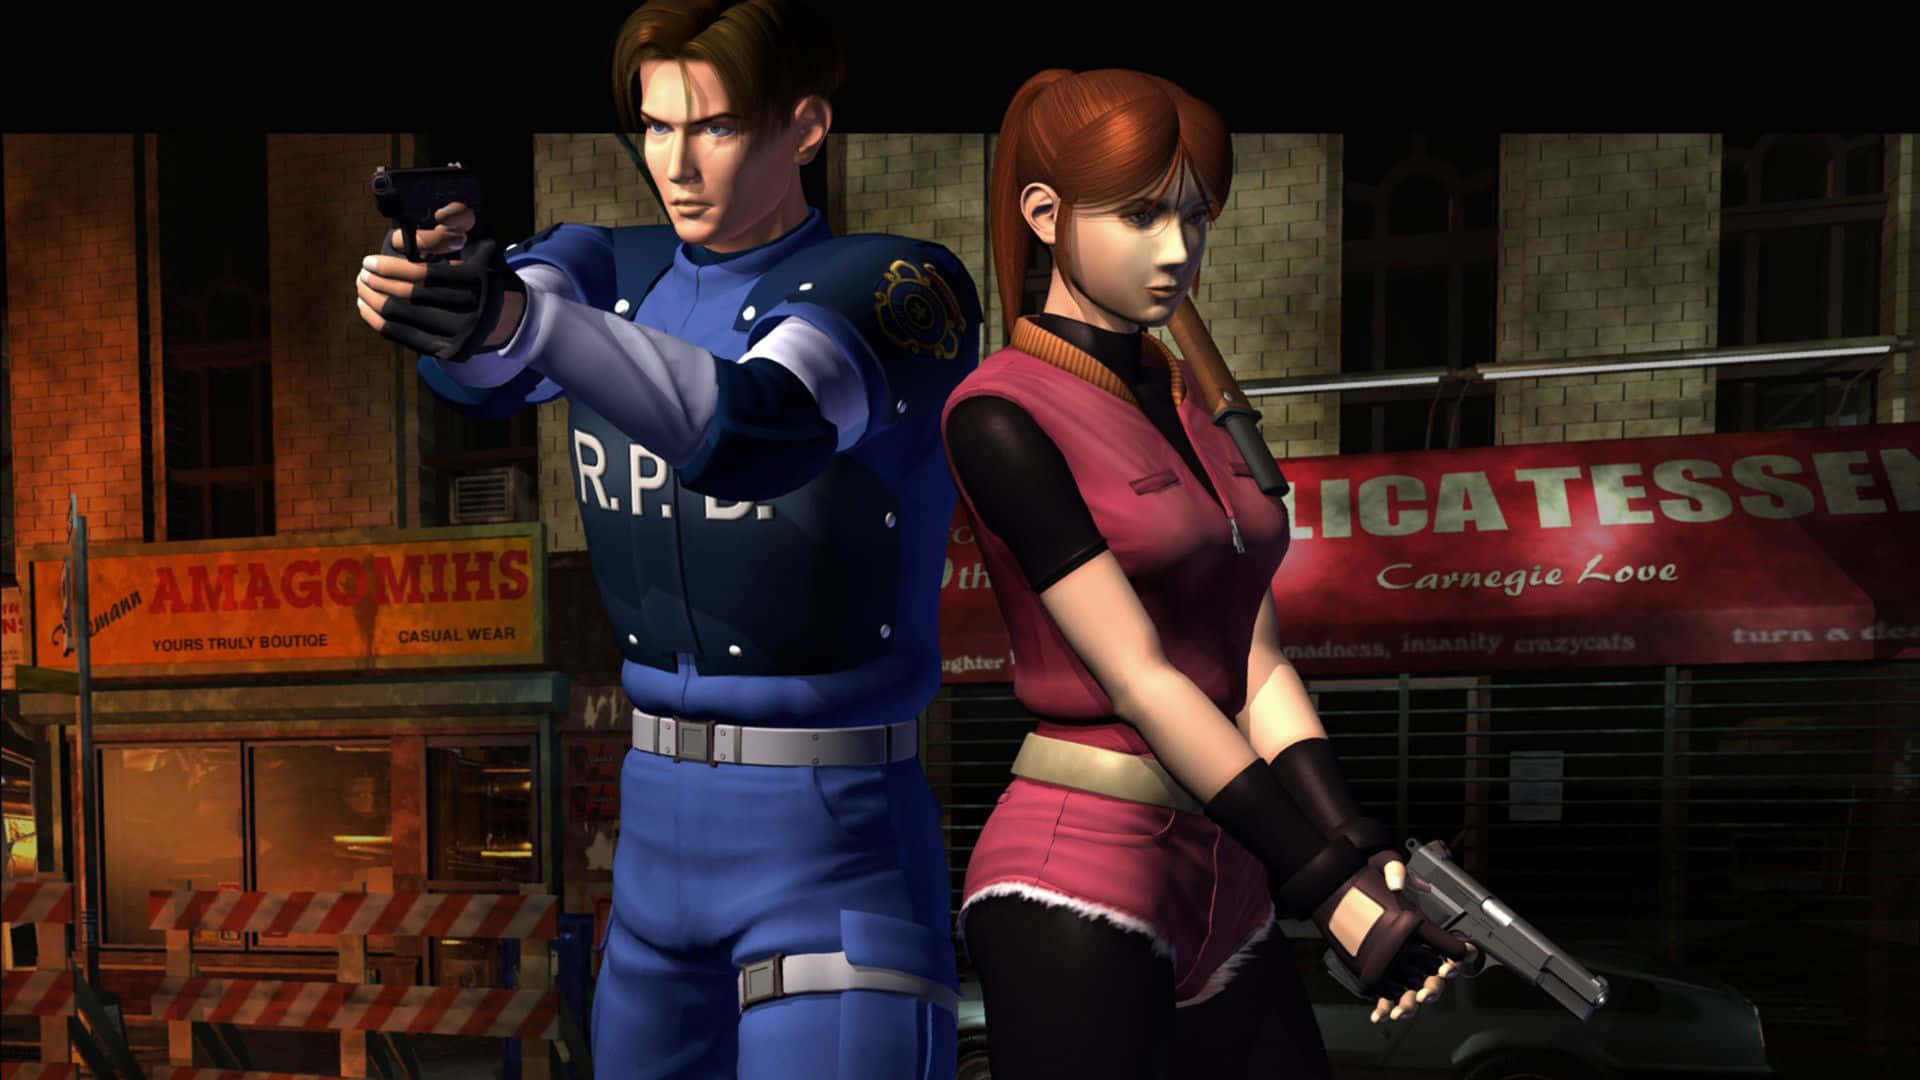 1920x1080bakgrundsbild För Resident Evil 2 Med Leon Och Claire Från Det Ursprungliga Spelet.